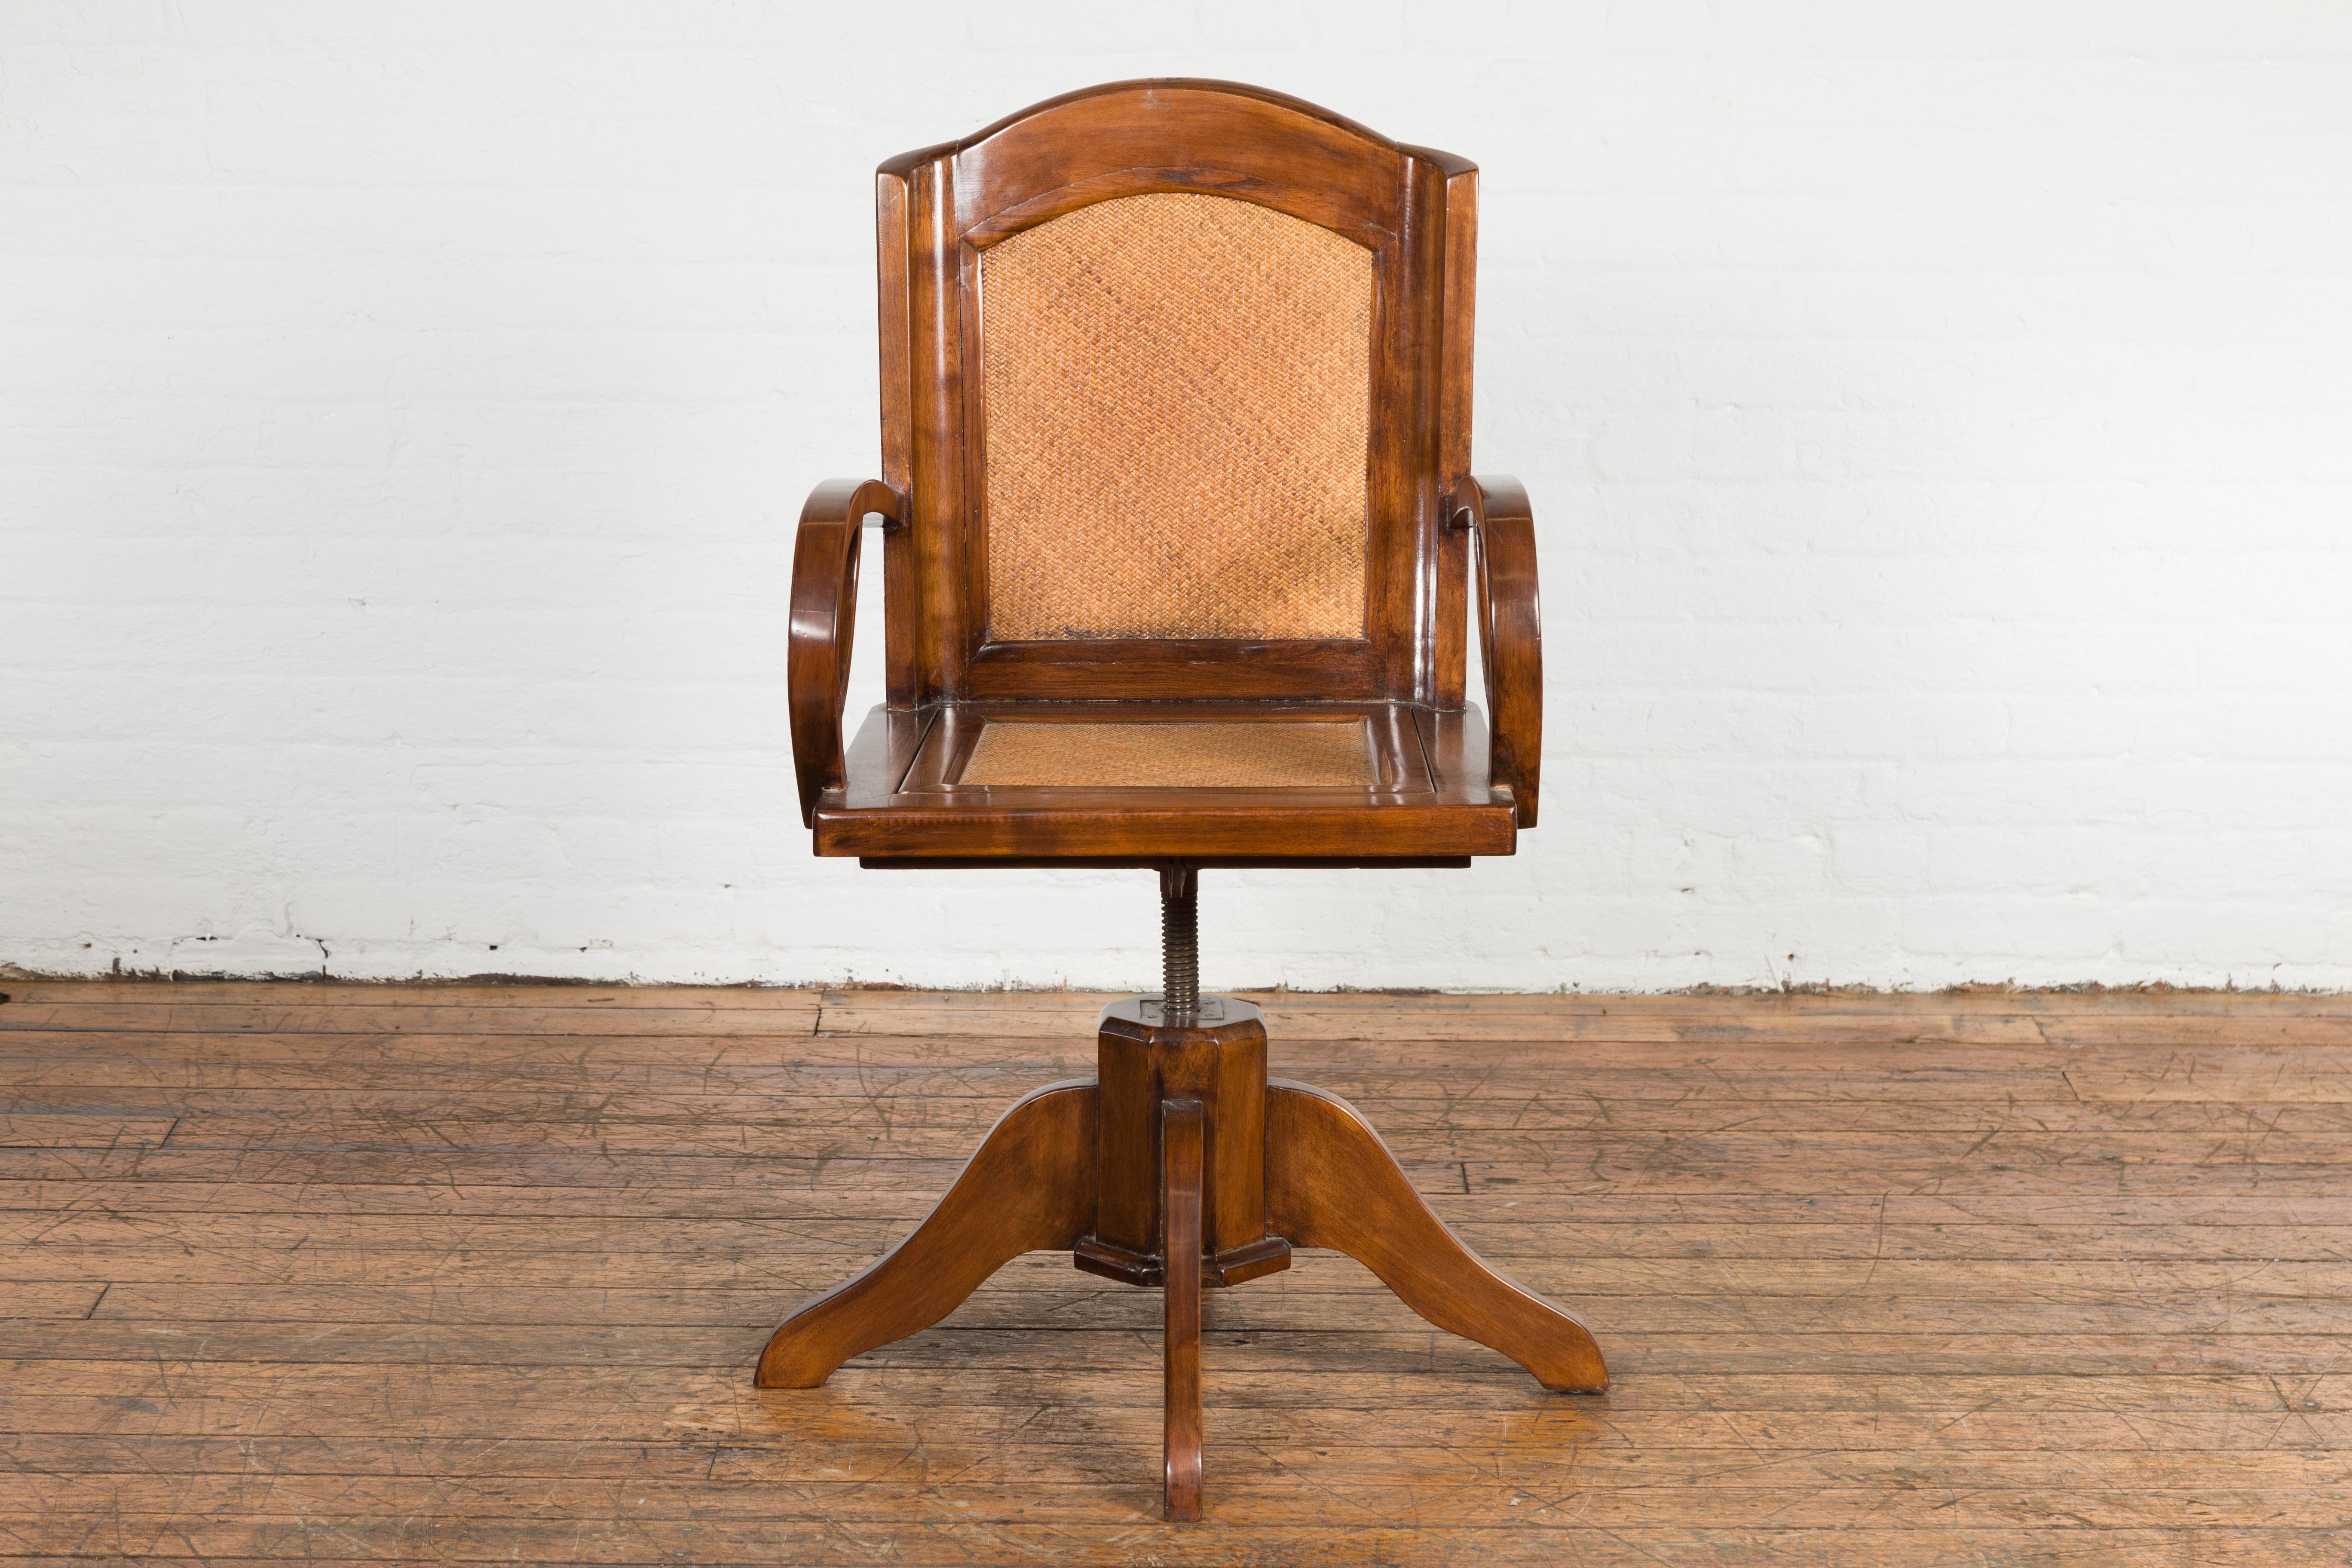 Art-Déco-Drehstuhl aus der Zeit um 1940 mit Rückenlehne und Sitz aus geflochtenem Rattan, Schlaufenarmen und abnehmbarem Sitz. Dieser Art-Déco-Schreibtischdrehstuhl aus der Zeit um 1940 ist eine harmonische Mischung aus Form und Funktion und